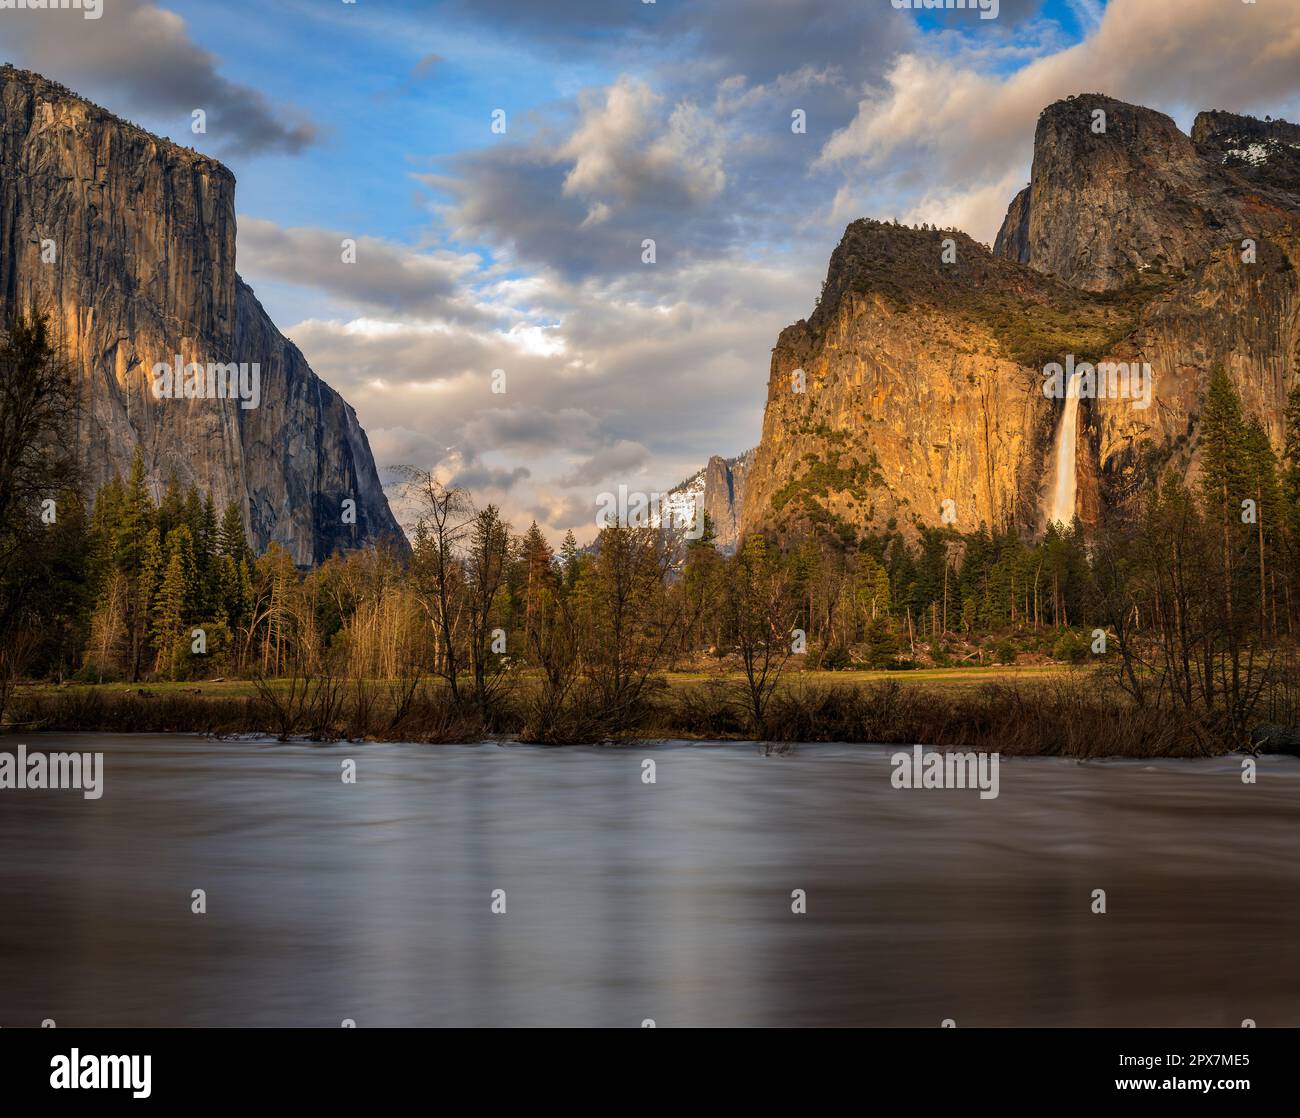 Malerischer Blick auf das berühmte Yosemite Valley im Yosemite National Park, Sierra Nevada Bergkette in Kalifornien, USA Stockfoto